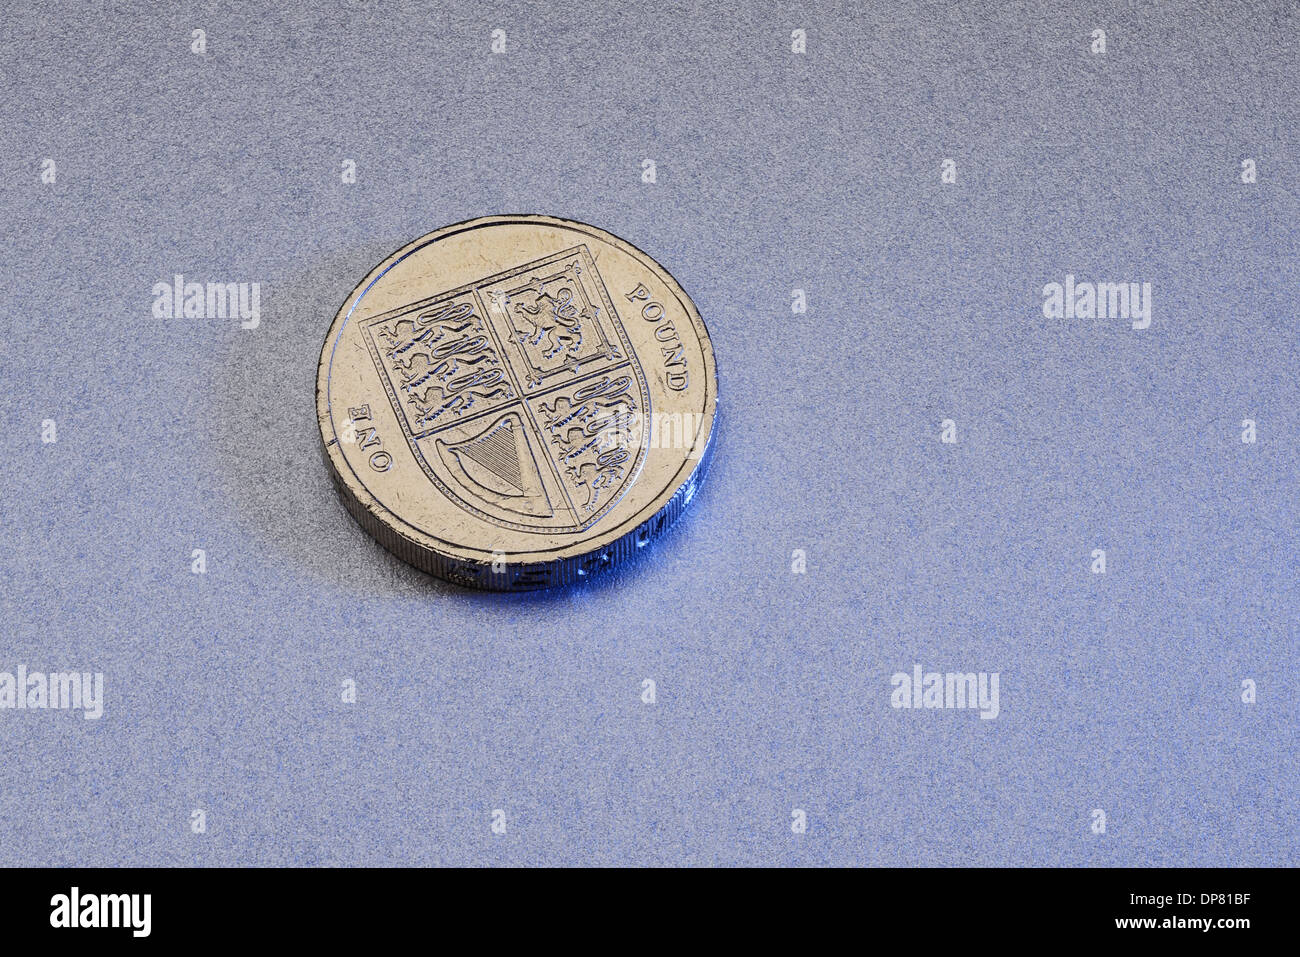 One pound coin Stock Photo